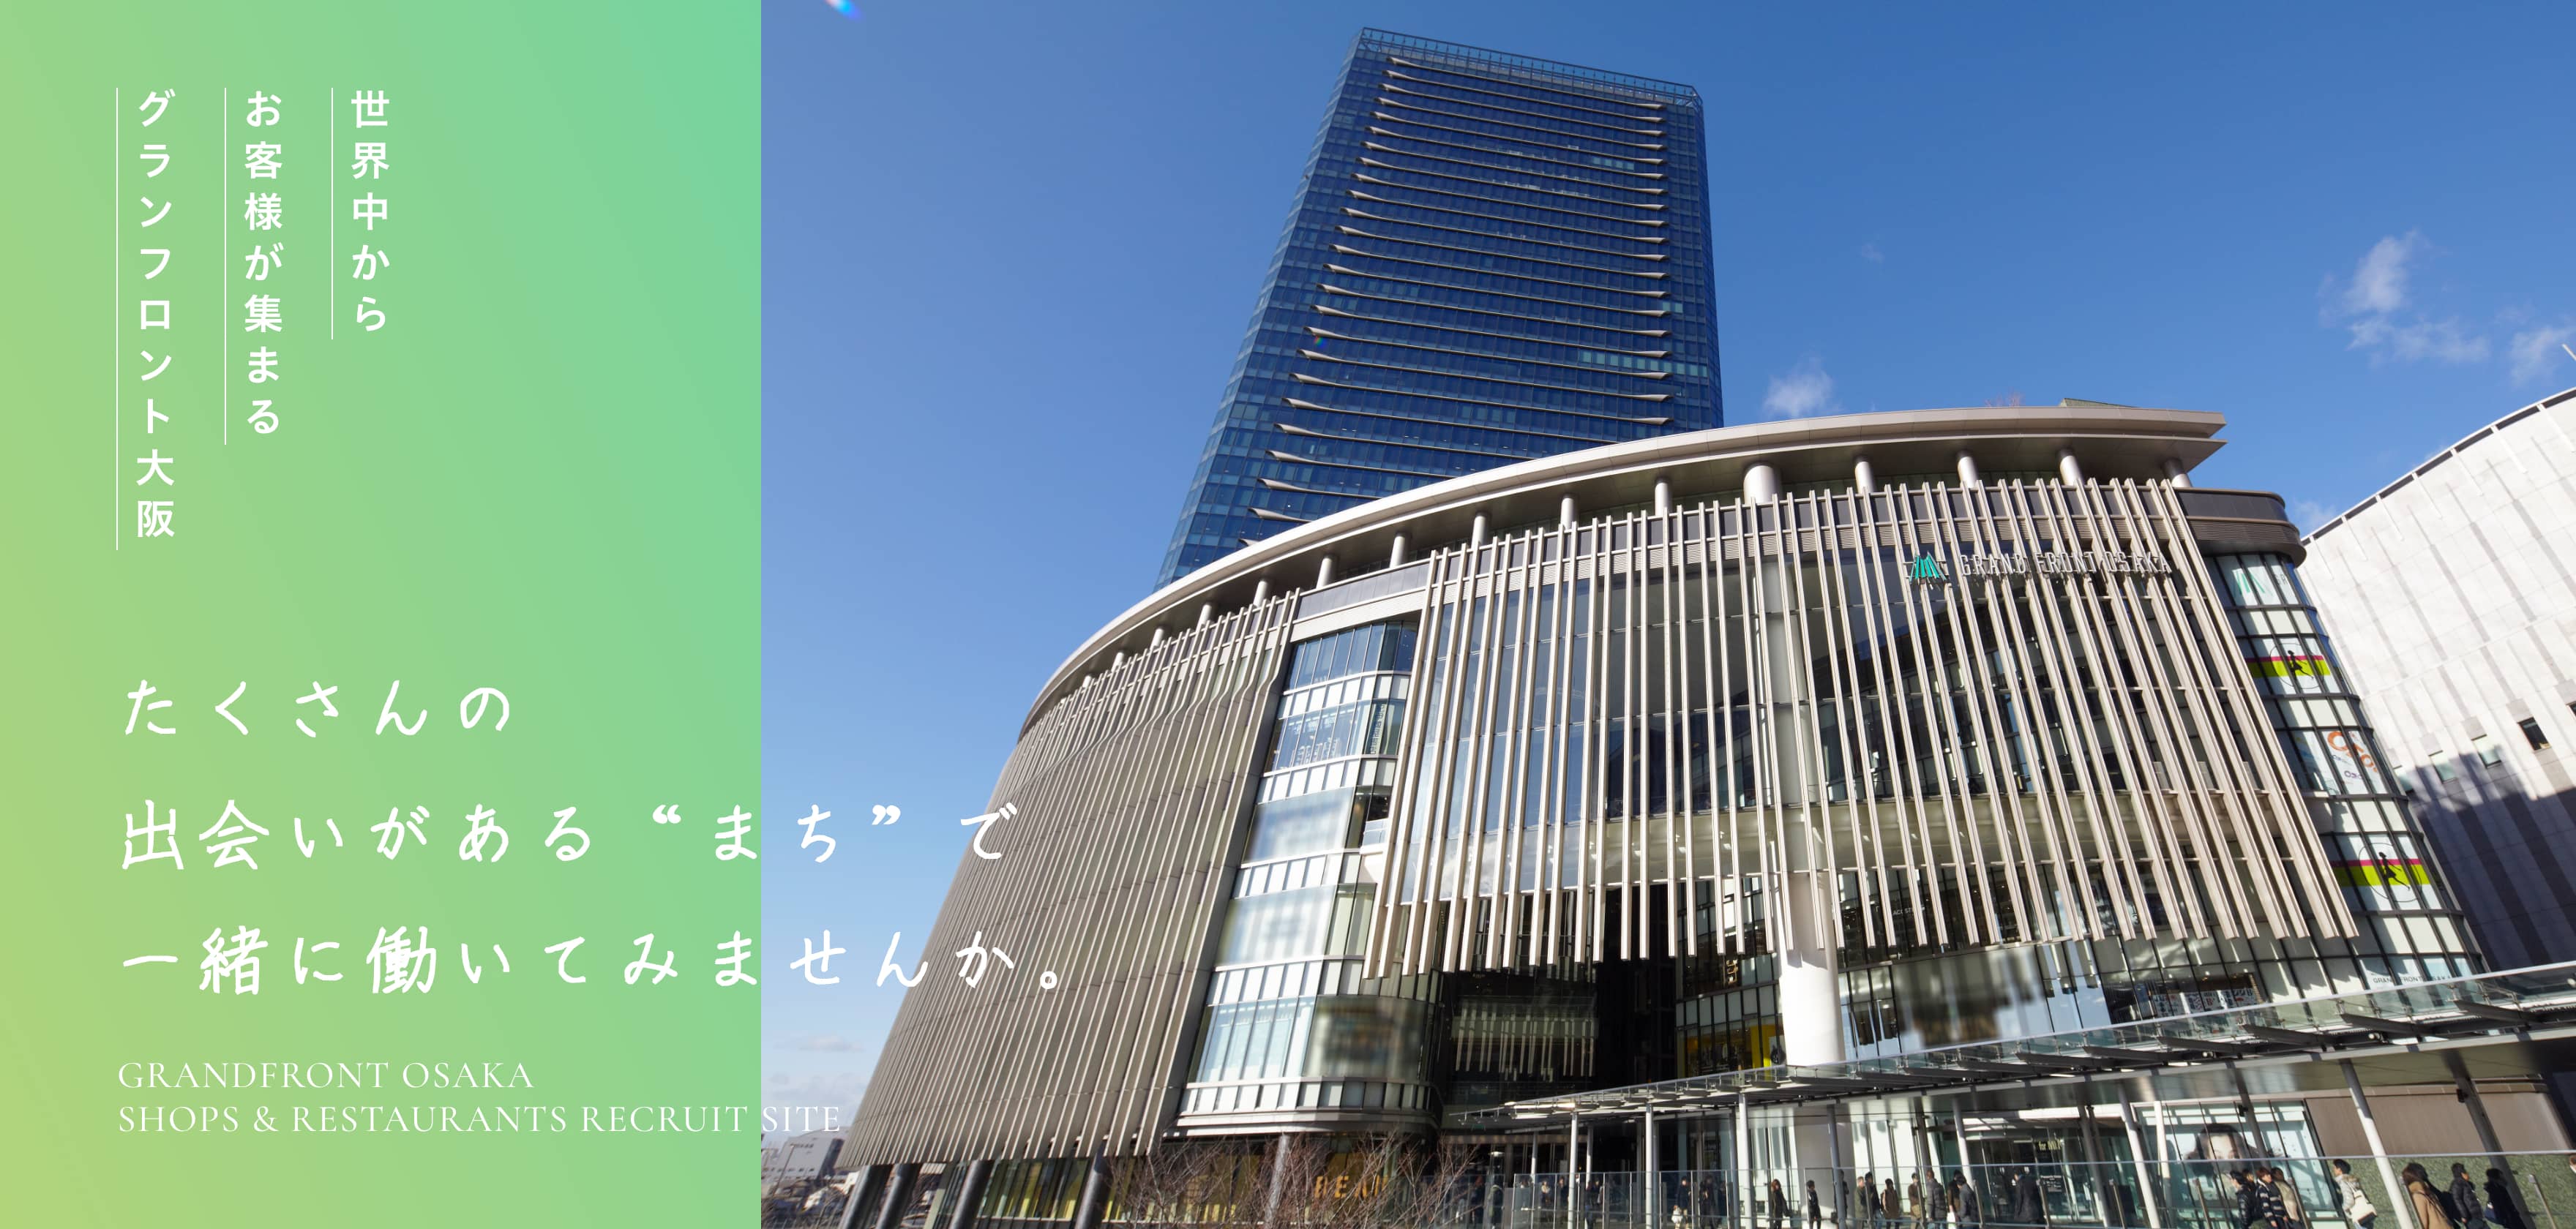 世界中からお客様が集まるグランフロント大阪 たくさんの出会いがあるまちで一緒に働いてみませんか。GRANDFRONT OSAKA SHOPS & RESTAURANTS RECRUIT SITE